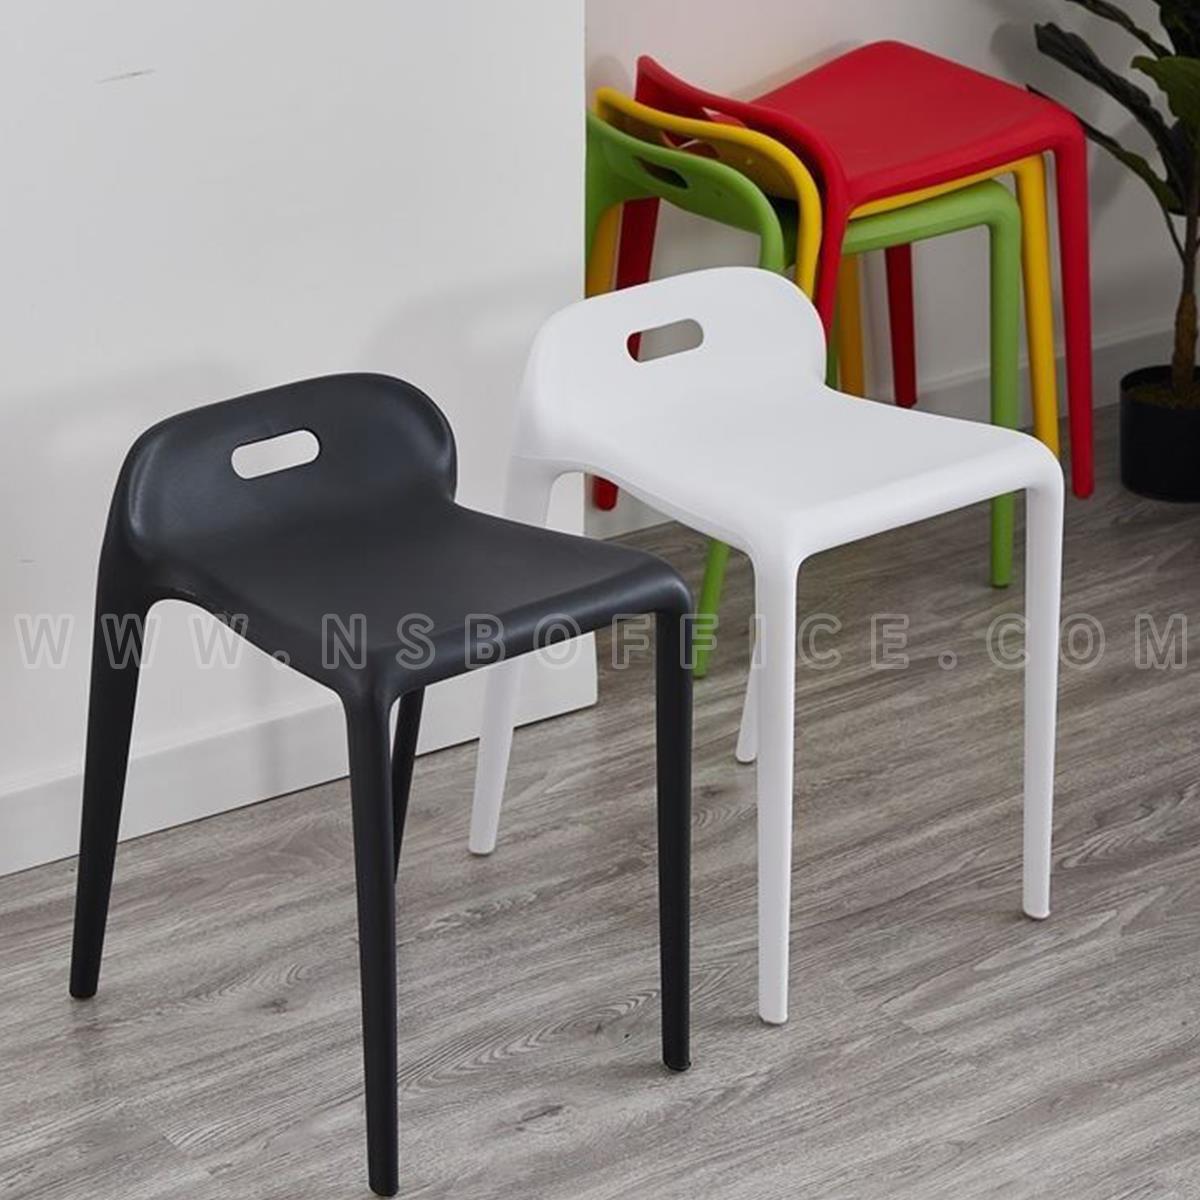 เก้าอี้โมเดิร์นพลาสติก รุ่น Hivis (ไฮวิส) ขนาด 52W cm. 